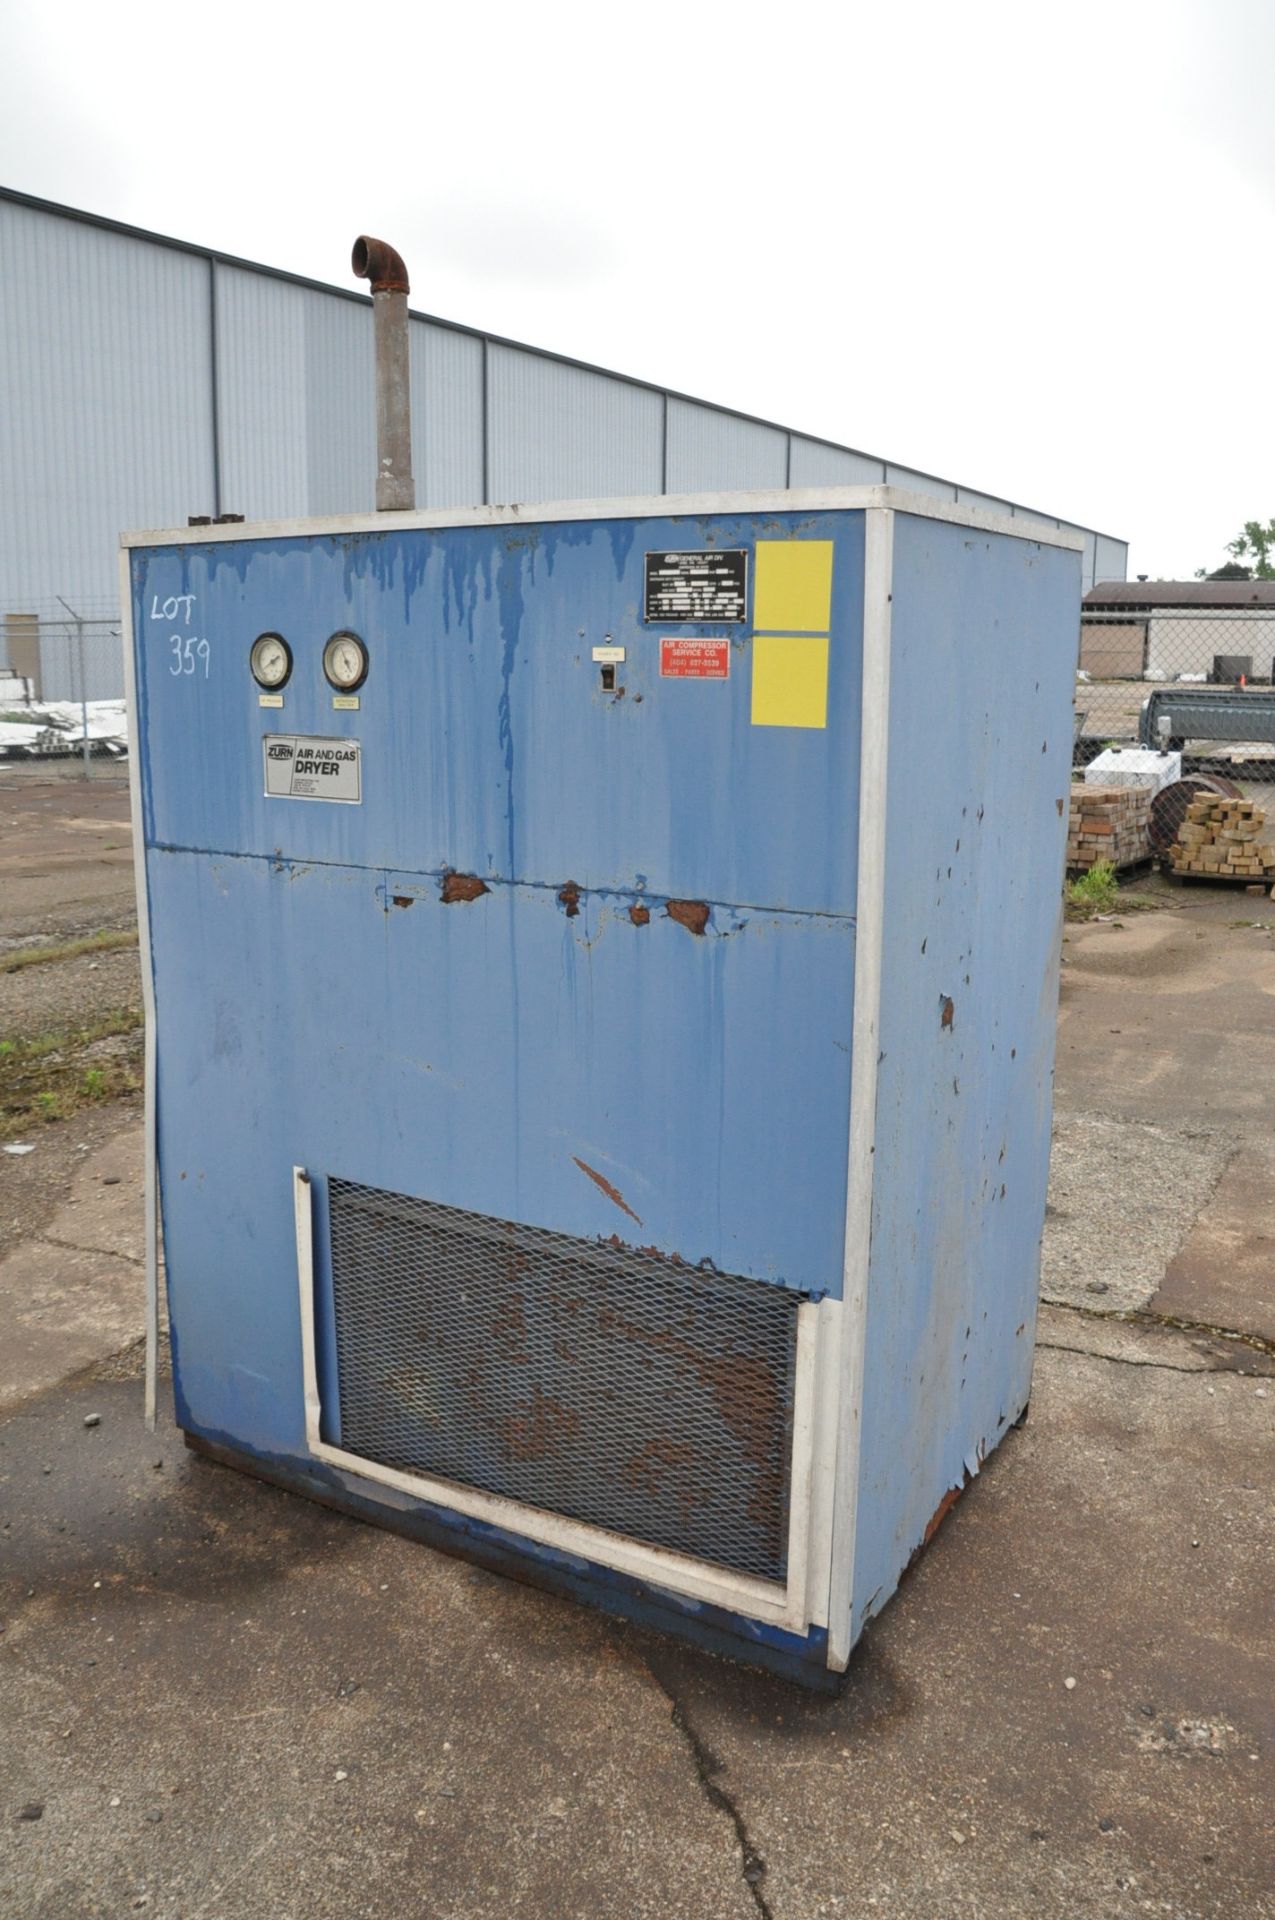 Zurn Model R75A, Compressed Air Dryer, S/n R16027 (1986), (Outside in Yard), Loading Fee $100.00